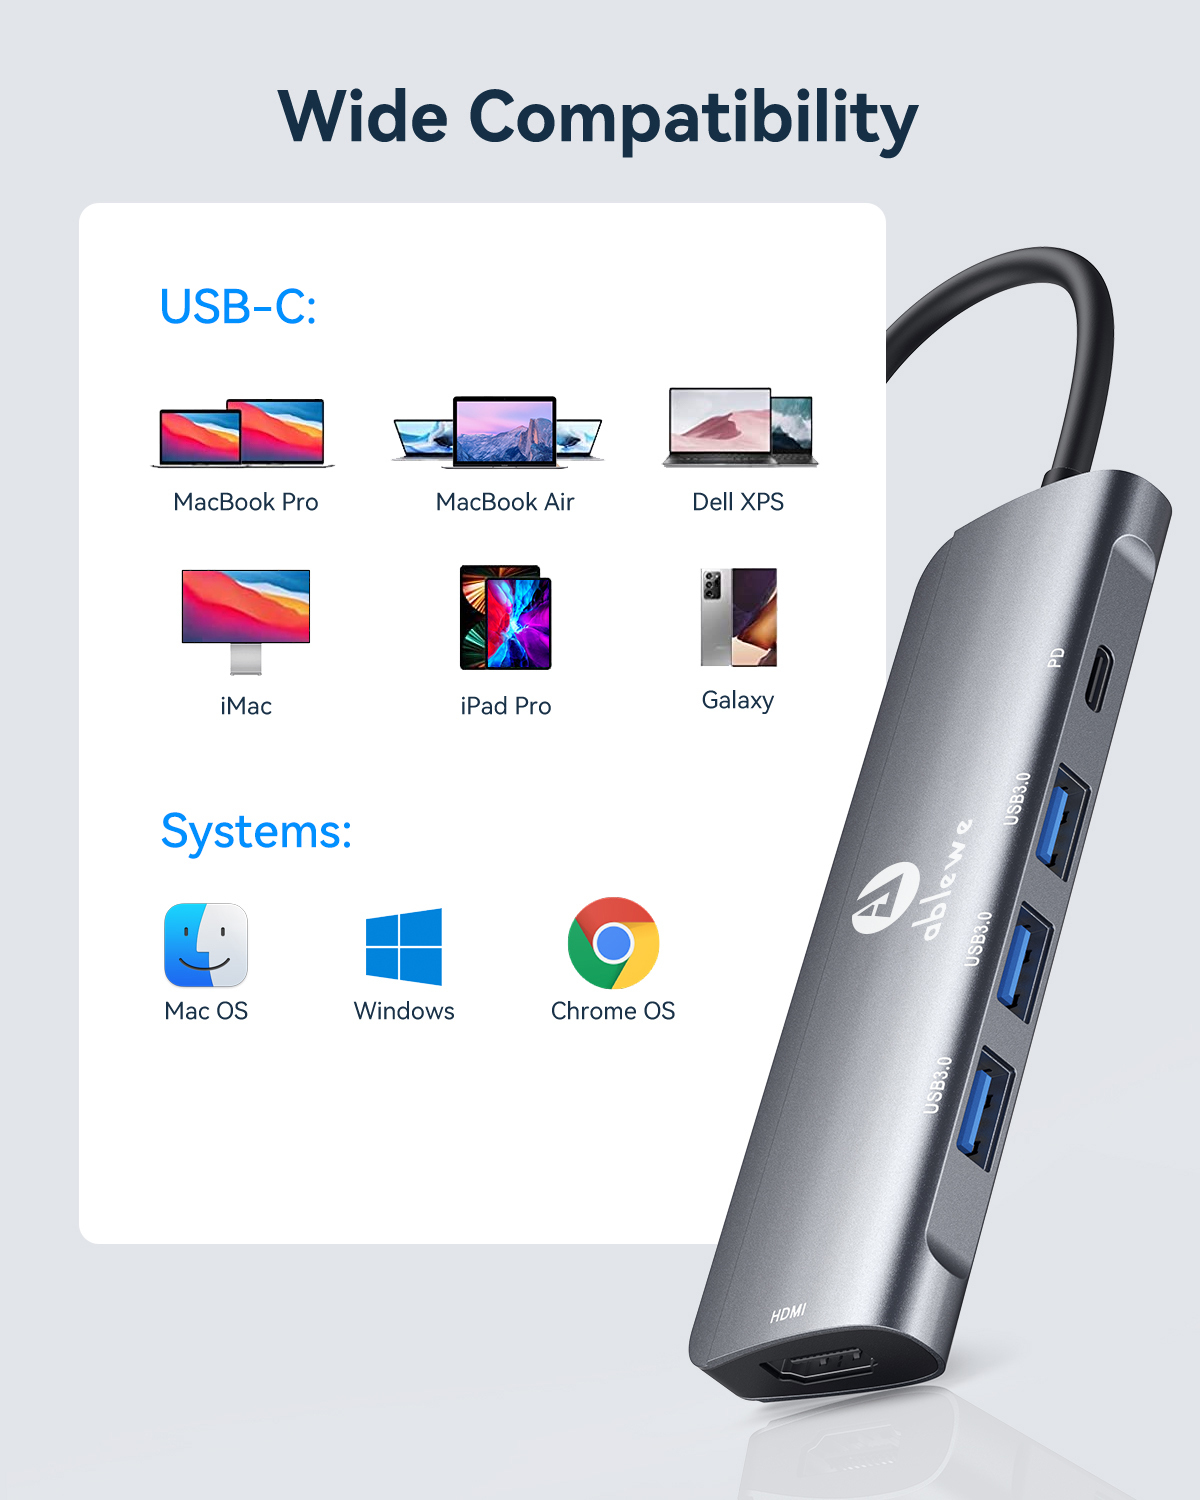 Adaptateur multiport USB-C USB 3.1 Type C vers HDMI 4K avec port USB 3.0 et  port de charge USB C pour MacBook / Chromebook Pixel / Dell XPS13 / Samsung  Galaxy s9 /